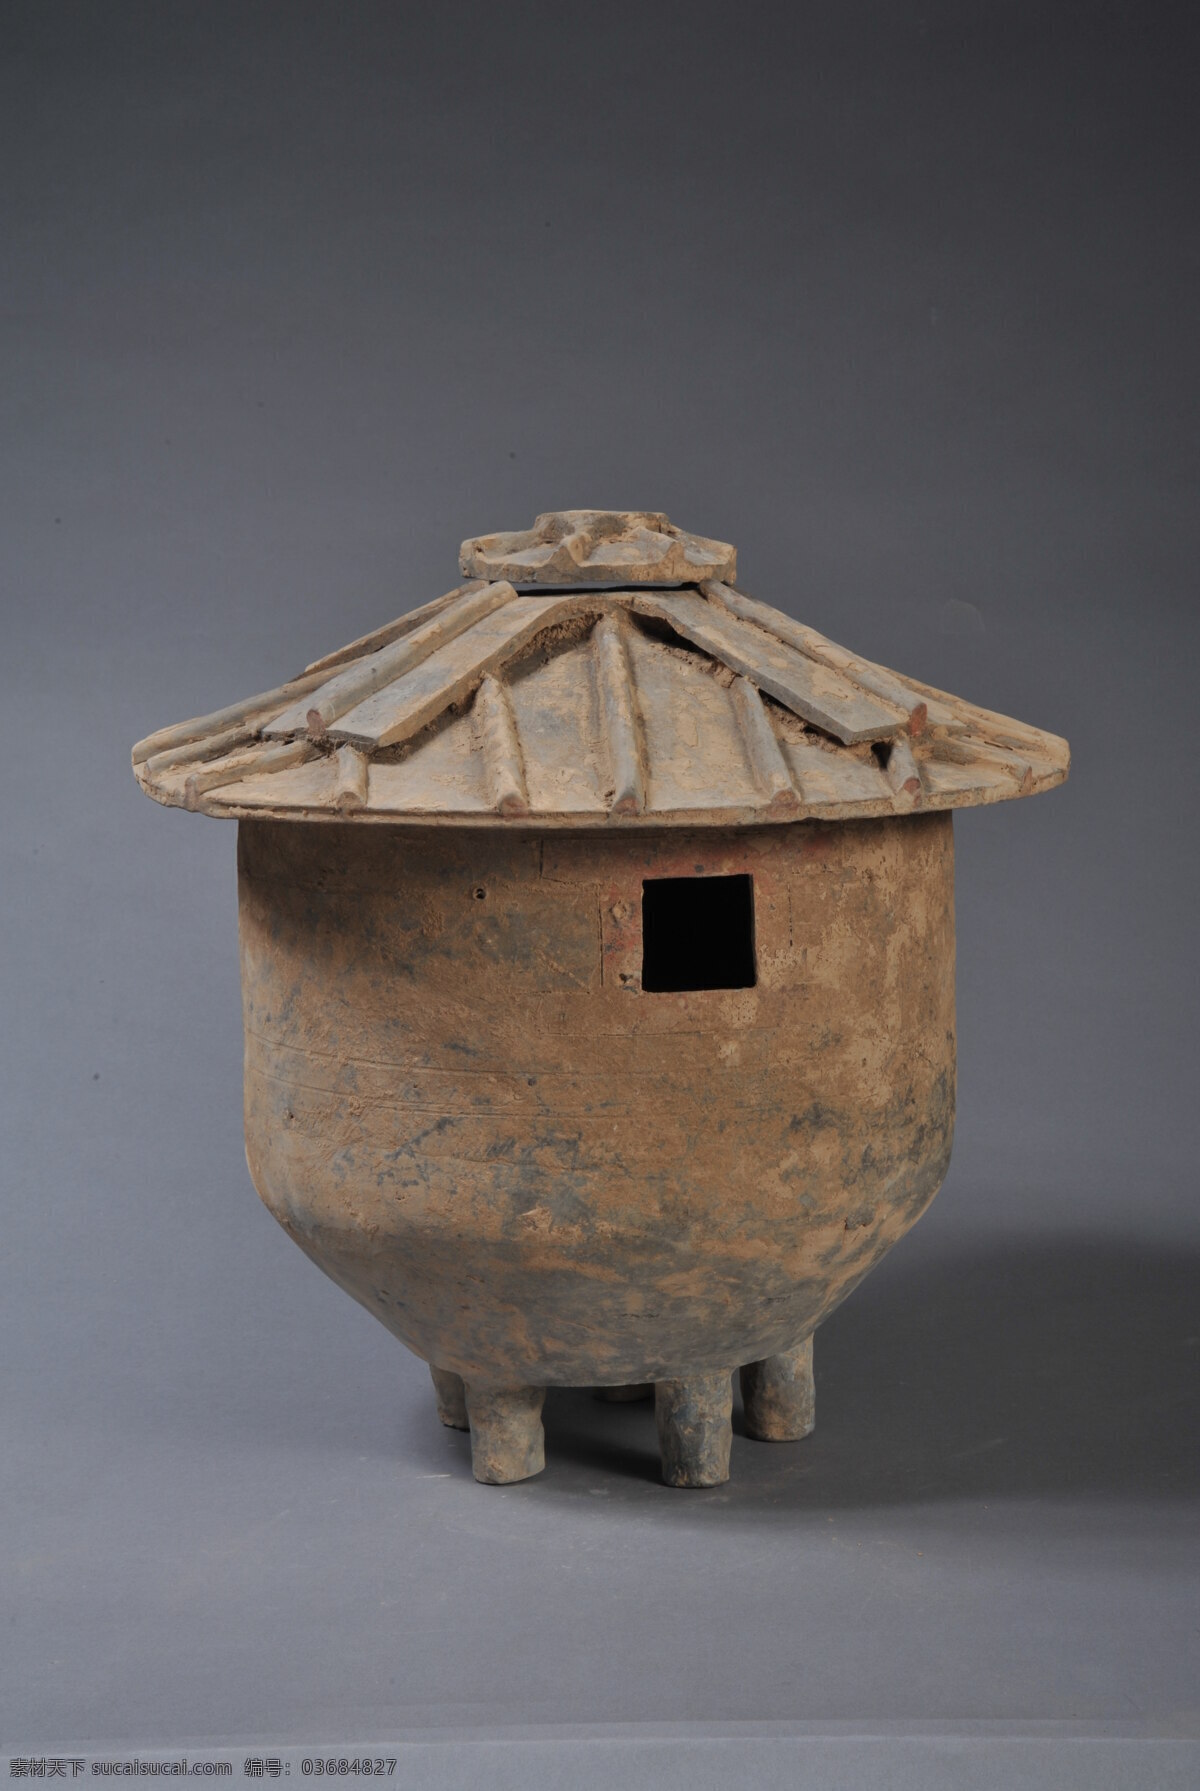 陶器 土色 粮仓 工艺品 文物 墓葬品 传统文化 文化艺术